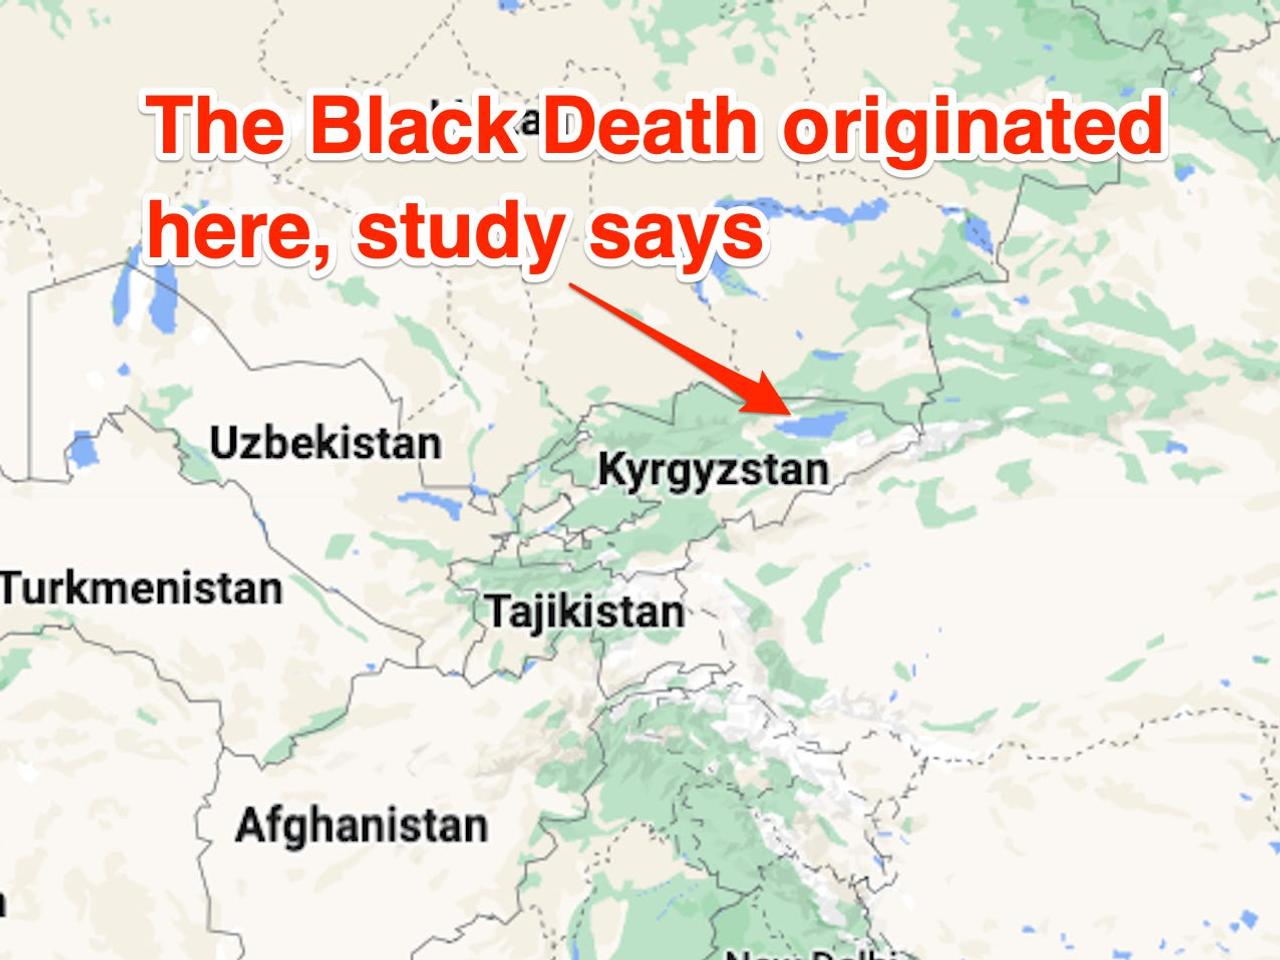 ペスト大流行の発生源である、キルギス北部の天山山脈のイシククル湖近く